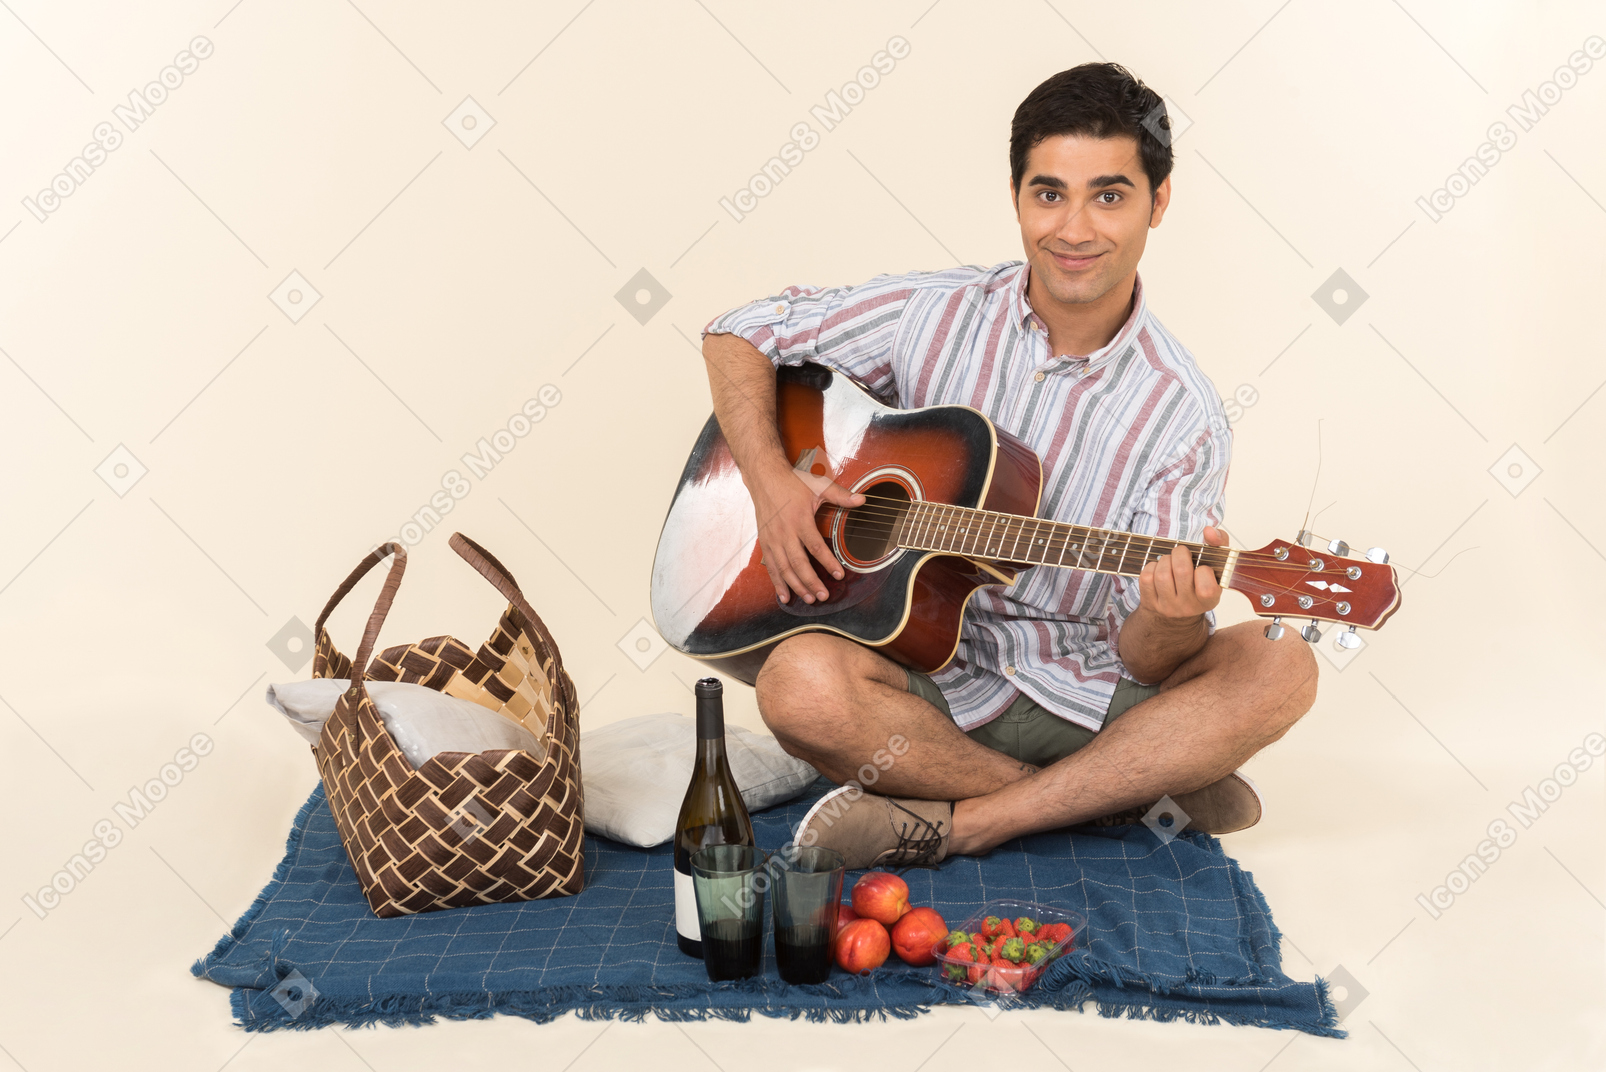 담요에 피크닉 바구니 근처에 앉아 기타를 연주하는 젊은 백인 남자